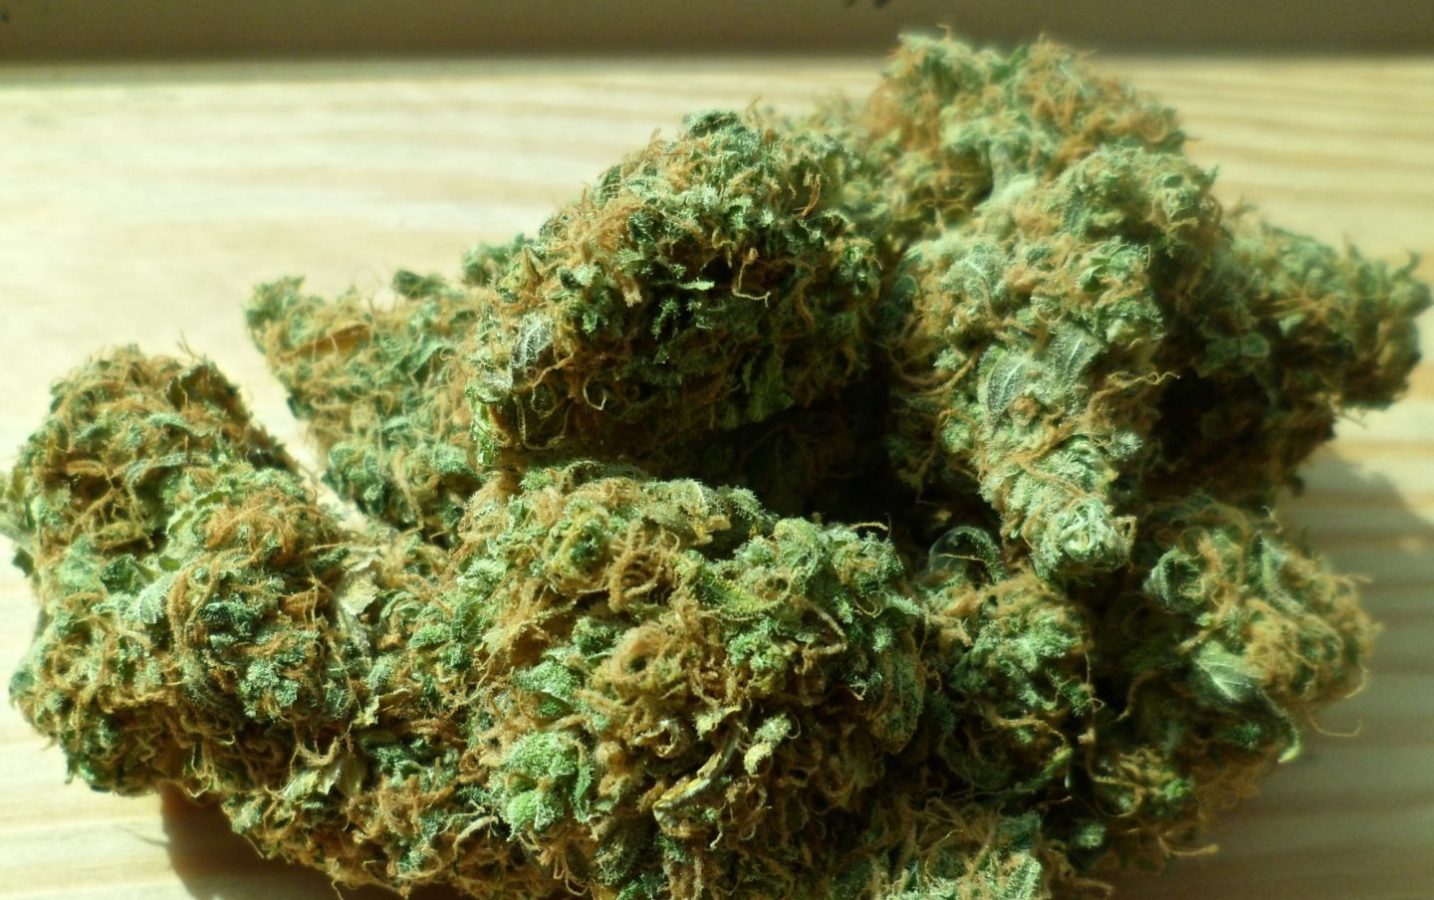 Cannabis stash